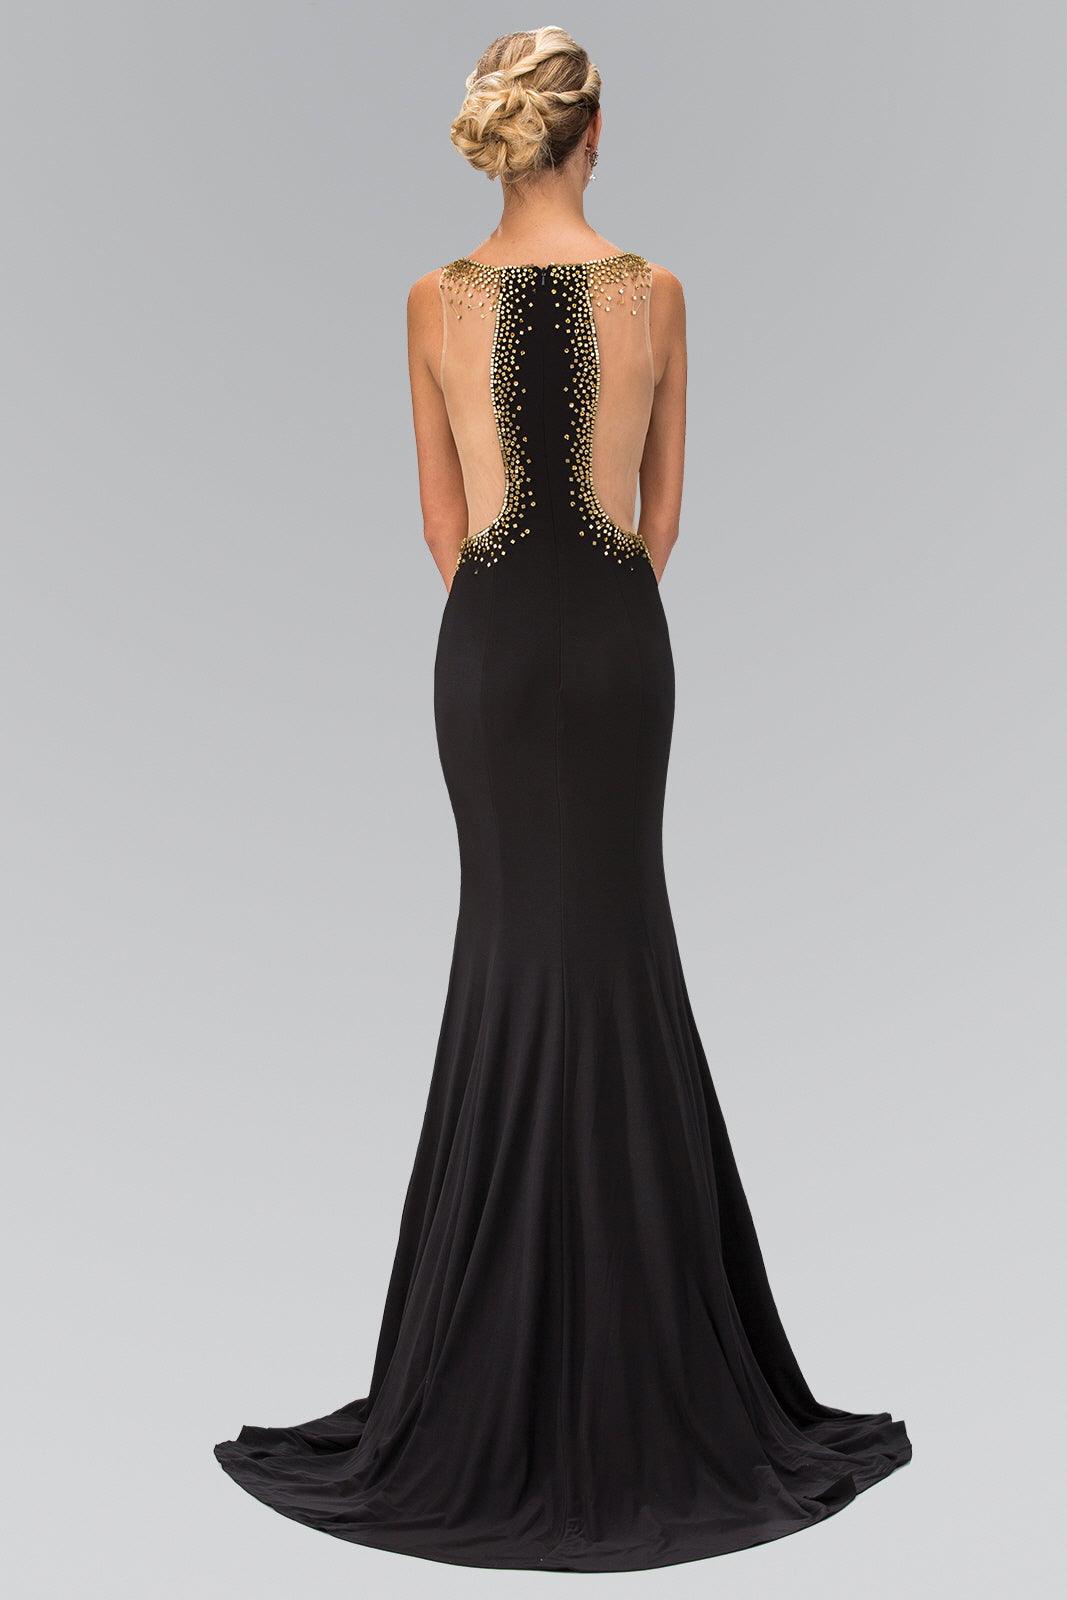 Long Prom Dress Side Slit and Sheer Waist - The Dress Outlet Elizabeth K